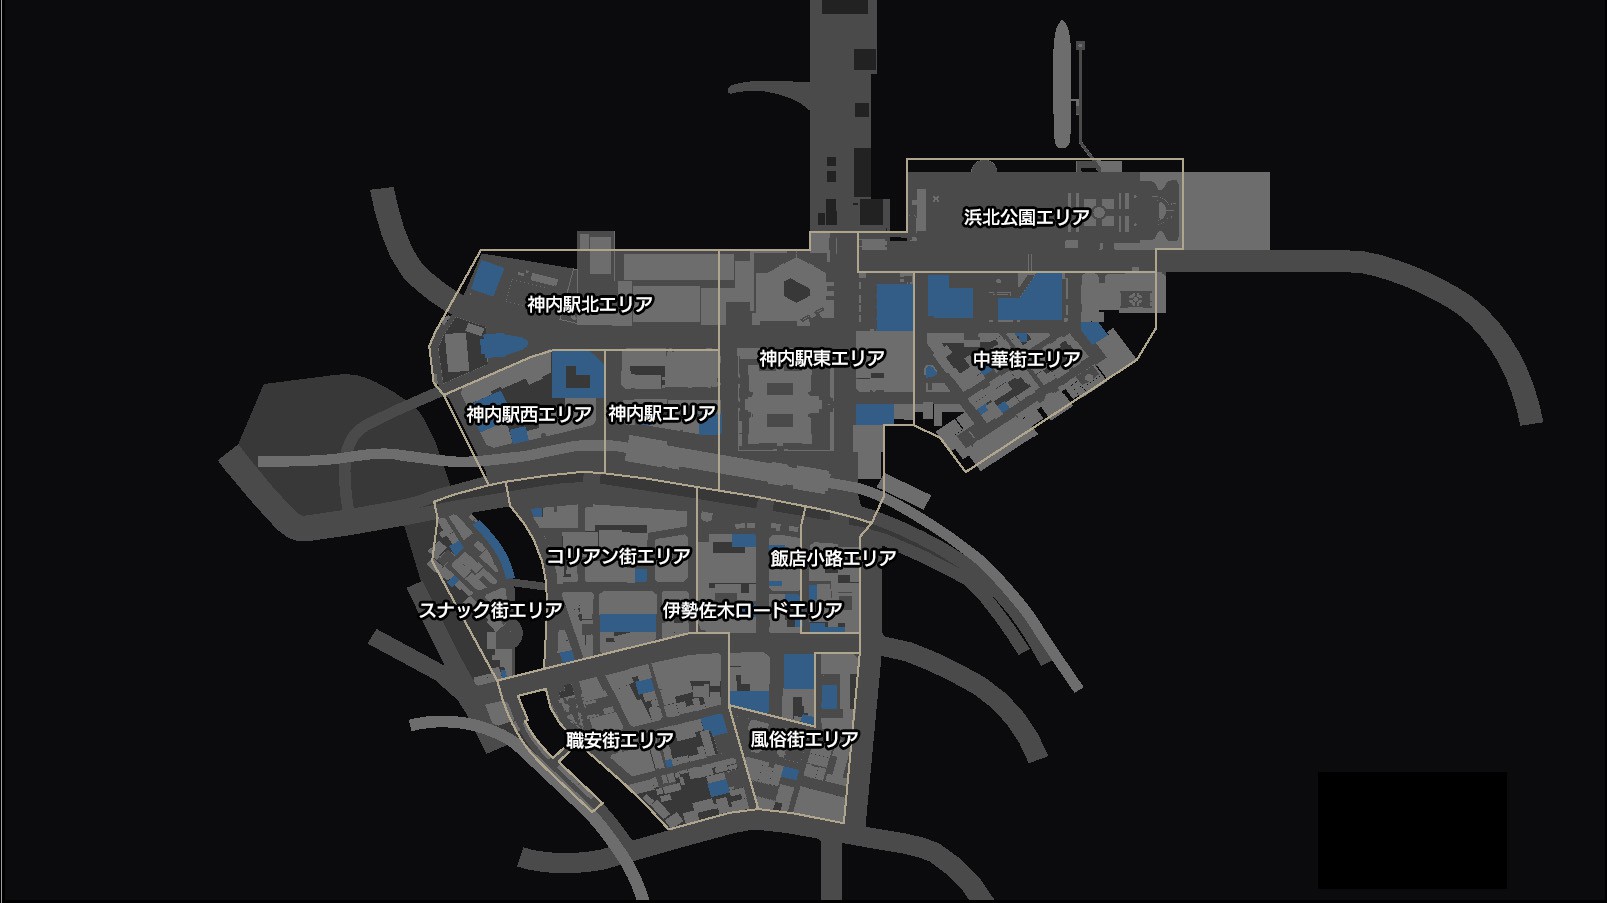 《如龙7》地图介绍 异人町9大区域!面积约为神室町的